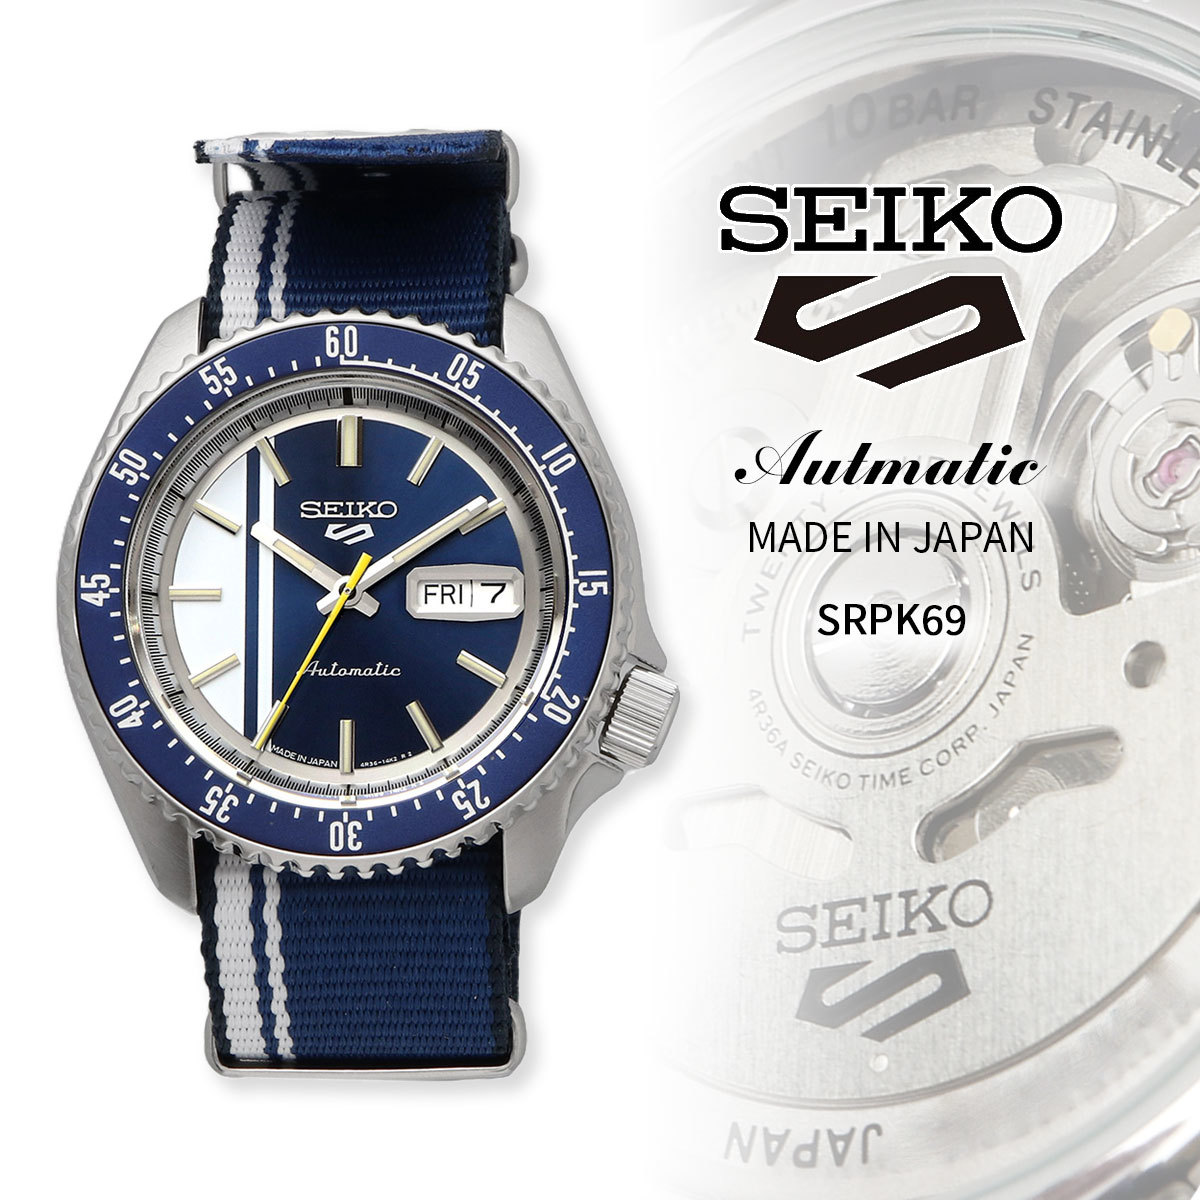 SEIKO セイコー ファイブ 5スポーツ 腕時計 メンズ 海外モデル U.S モデル SKX STYLE 自動巻き SRPK69_画像1